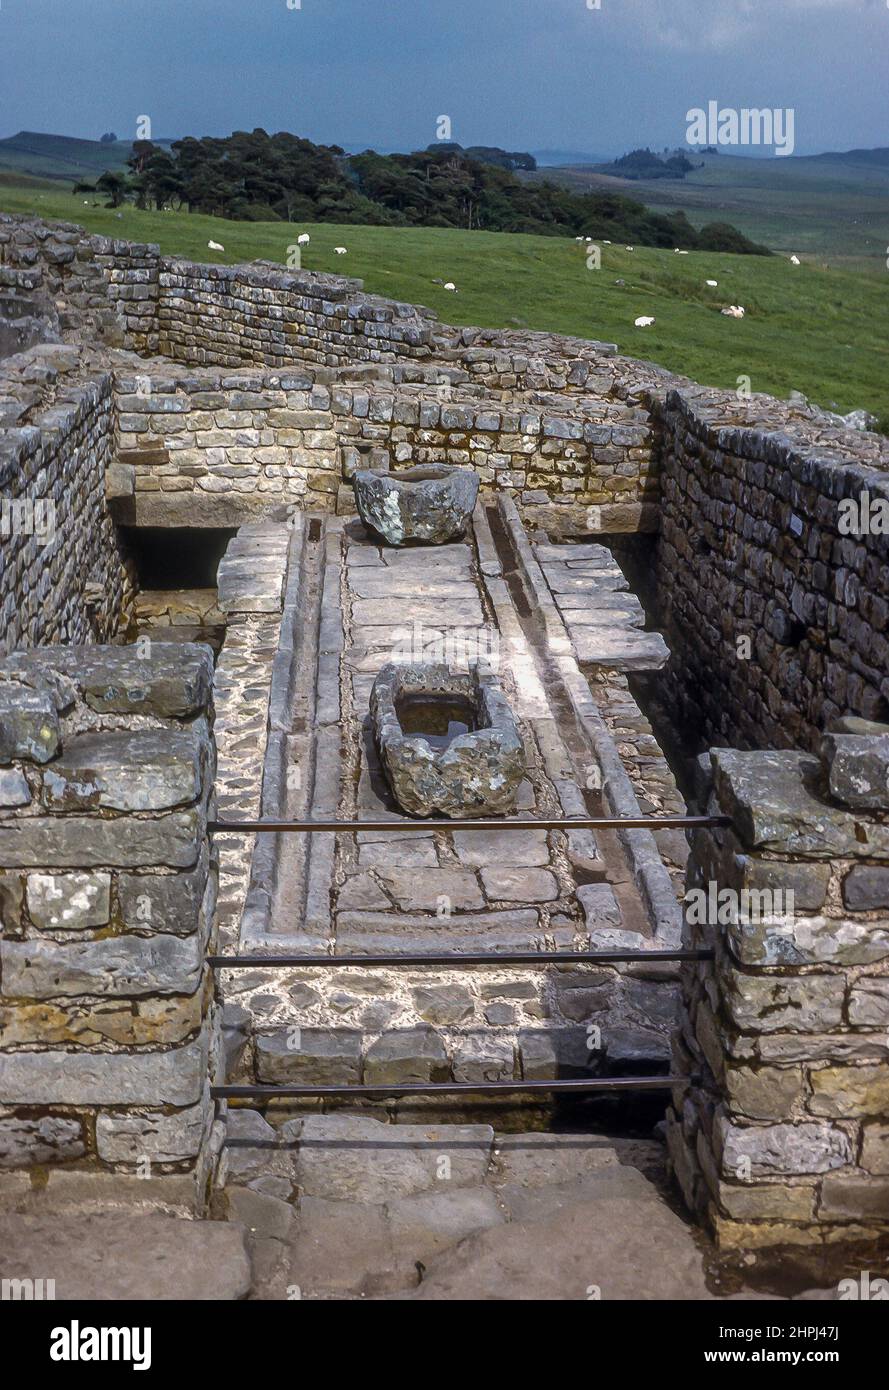 Waschraum römischer Soldaten bei Housesteads, einer von 15 Festungen  entlang der Hadrians Wall, England Stockfotografie - Alamy